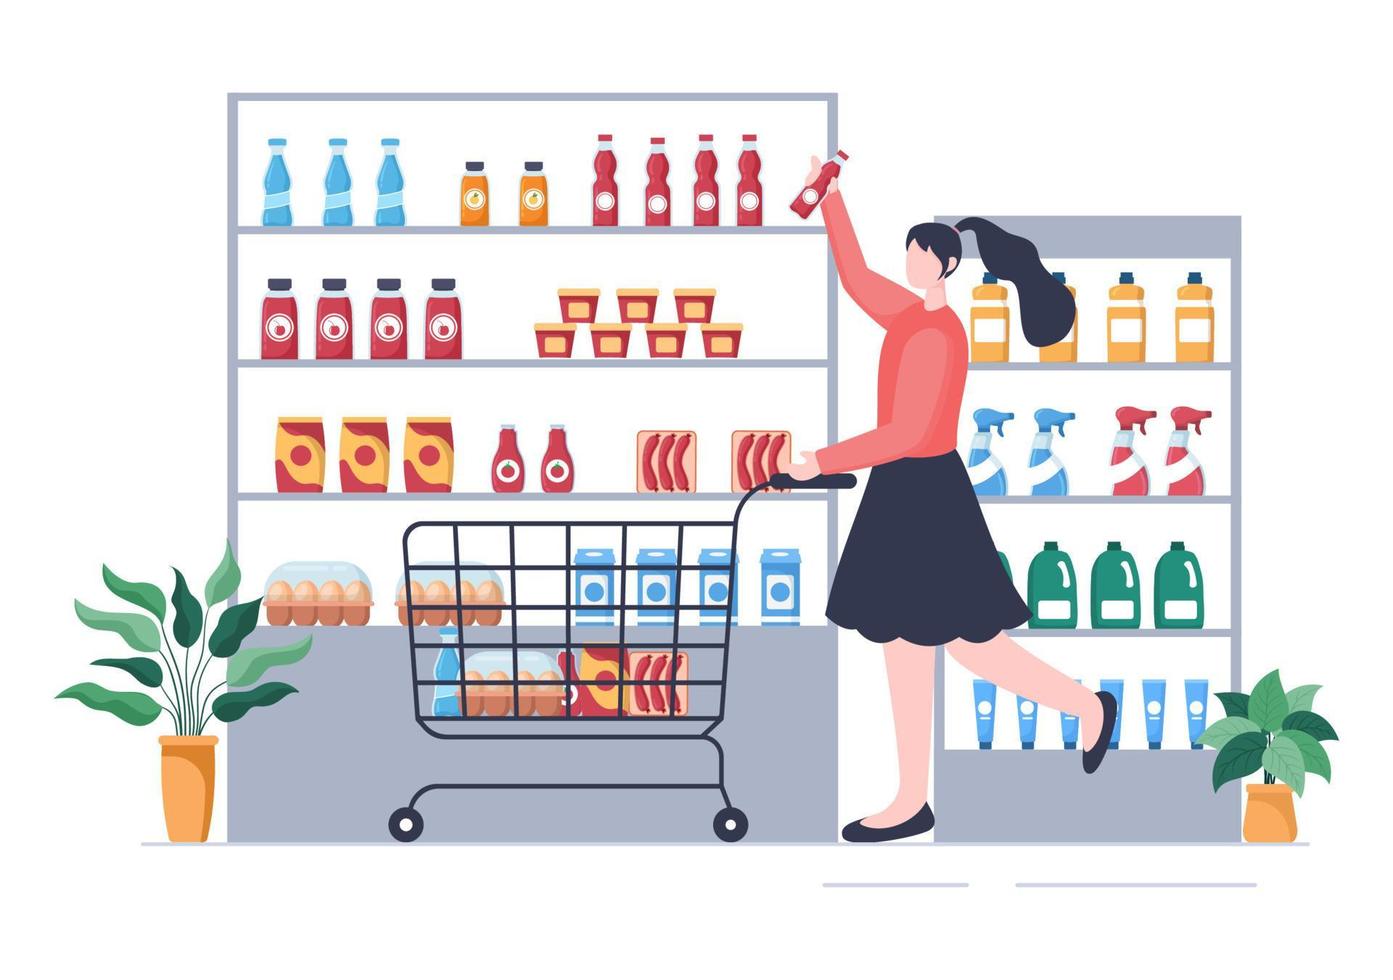 supermarkt met planken, kruidenierswaren en een volledig winkelwagentje, detailhandel, producten en consumenten in een platte cartoonachtergrondillustratie vector